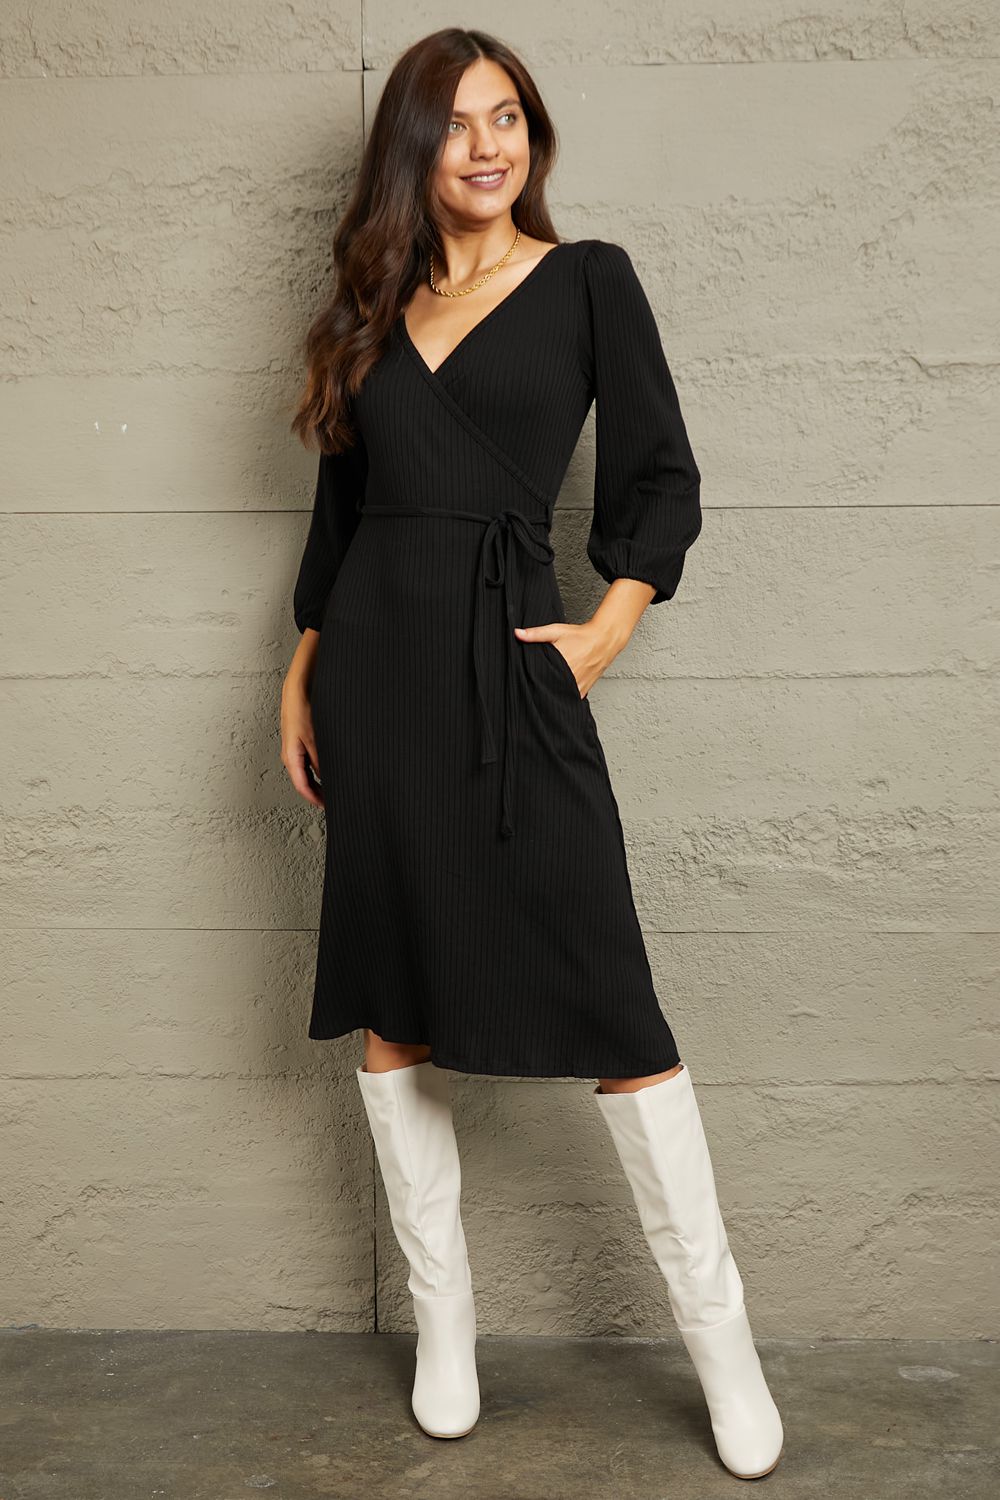 No Way Around It Surplice Flare Ruching Dress-Black Black Wrap Knee Knee Length Dress by Vim&Vigor | Vim&Vigor Boutique